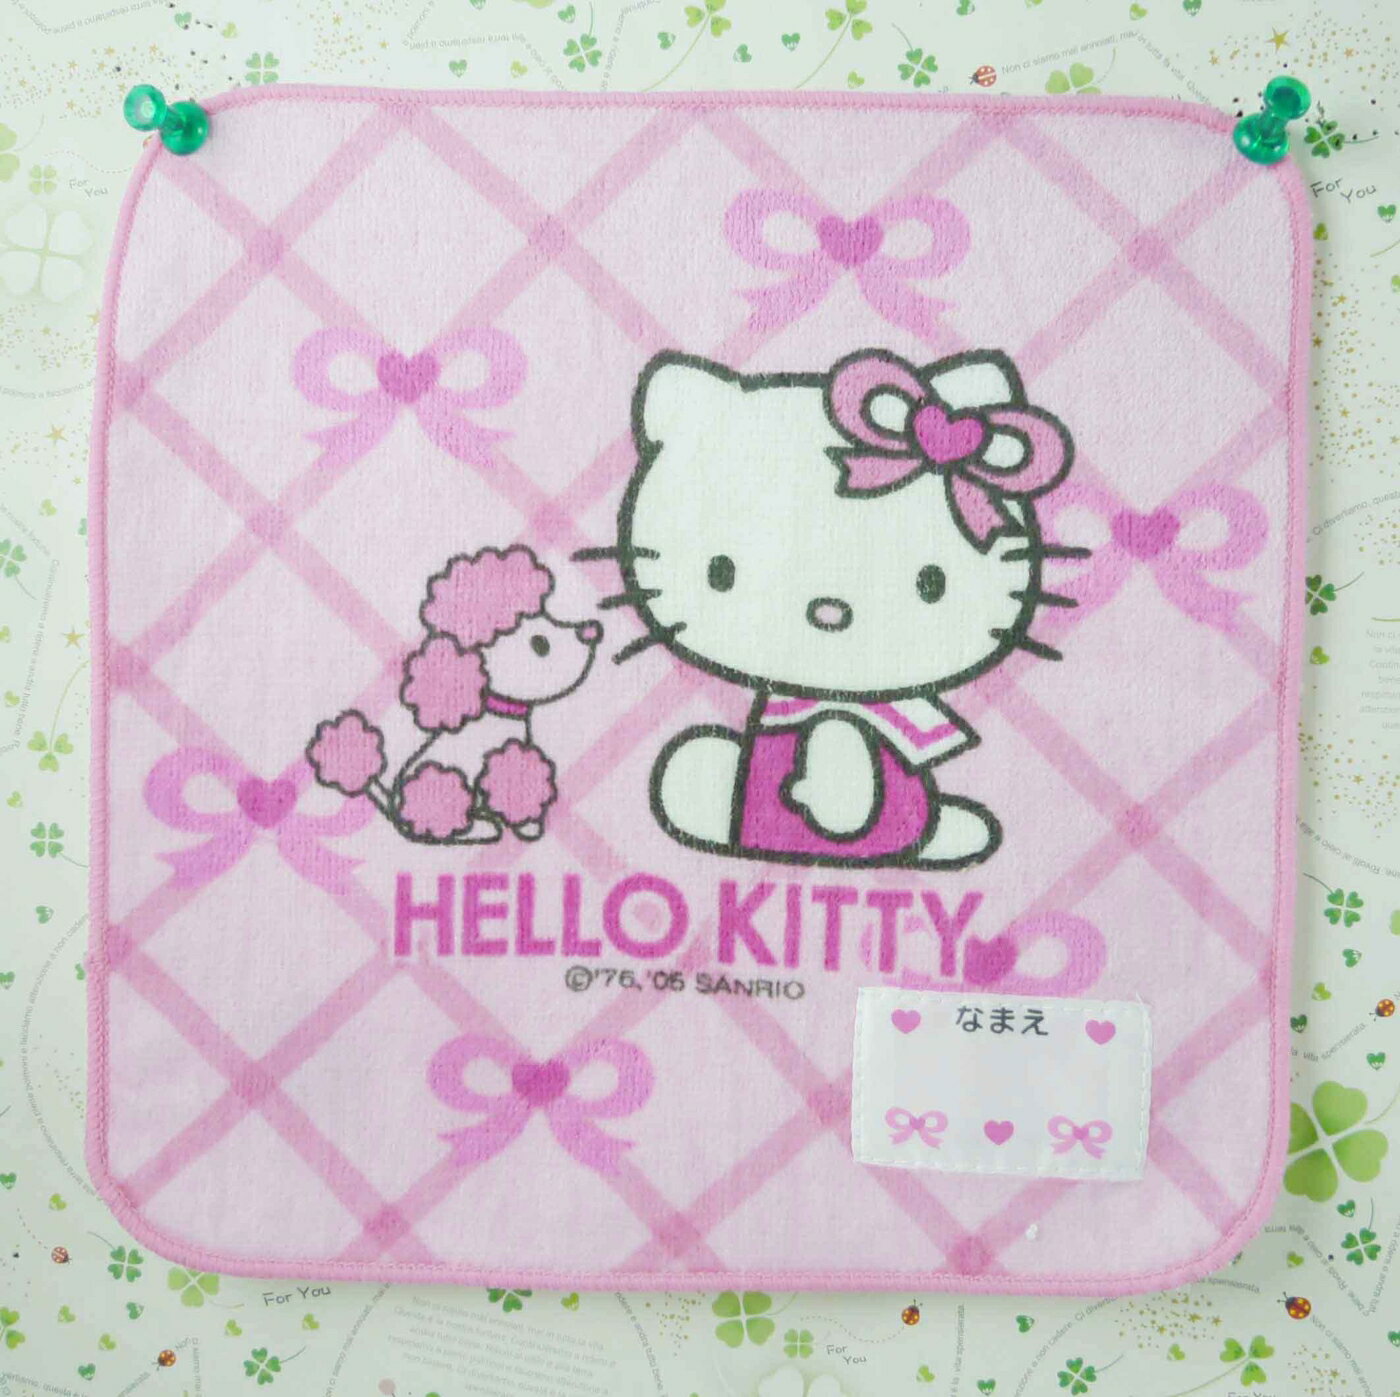 【震撼精品百貨】Hello Kitty 凱蒂貓 方巾/毛巾-粉色大格底色-粉貴賓狗 震撼日式精品百貨